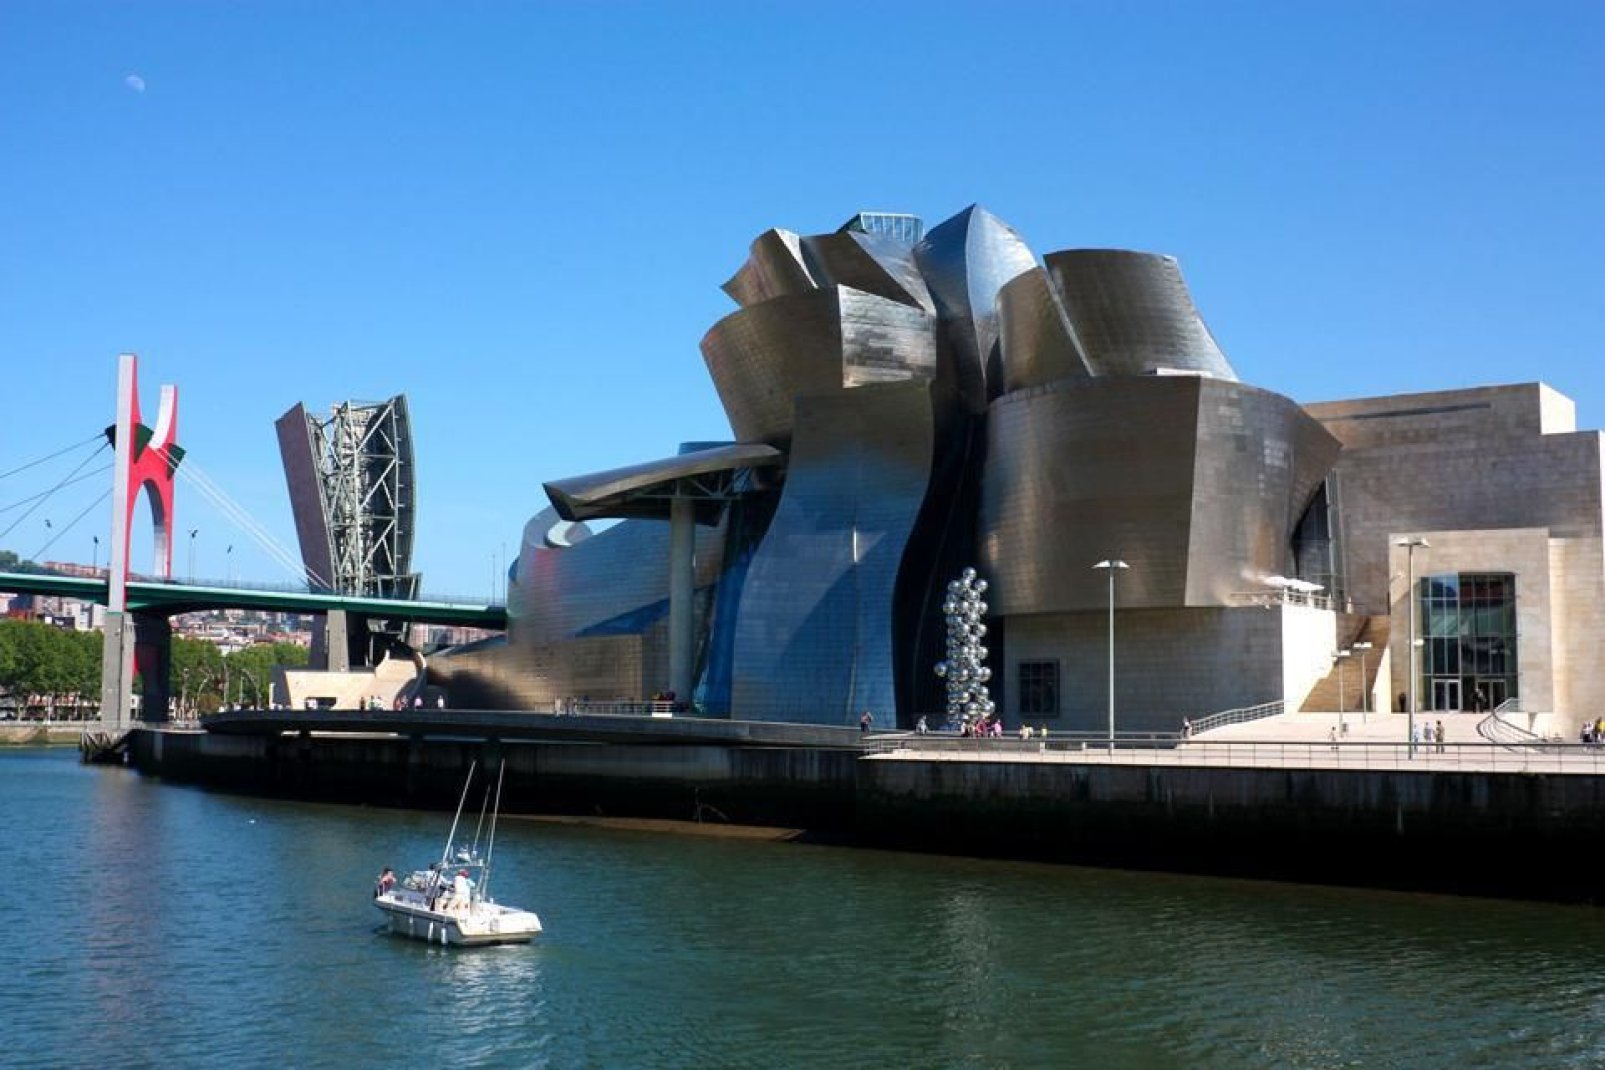 Le batiment pensé et conçu par Frank Gehry symbolise, de par sa forme et les matériaux utilisés, l'industrie navale.